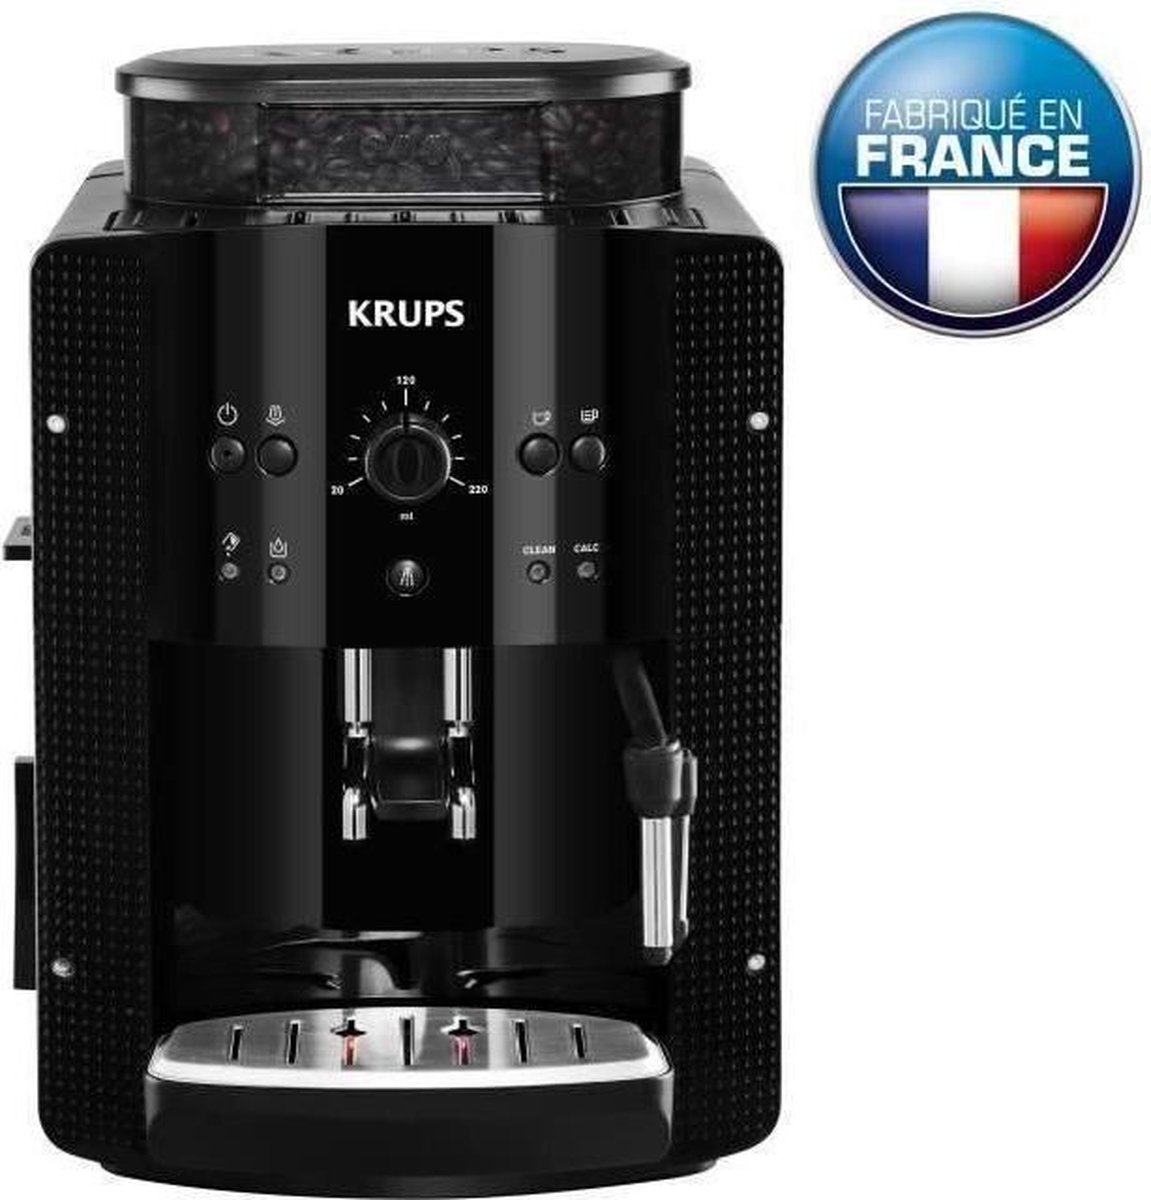 Krups Koffiemachine graan koffiemolen essentiële yy8125fd cafetiere expresso stoommondstuk cappuccino gemaakt in Frankrijk zwart